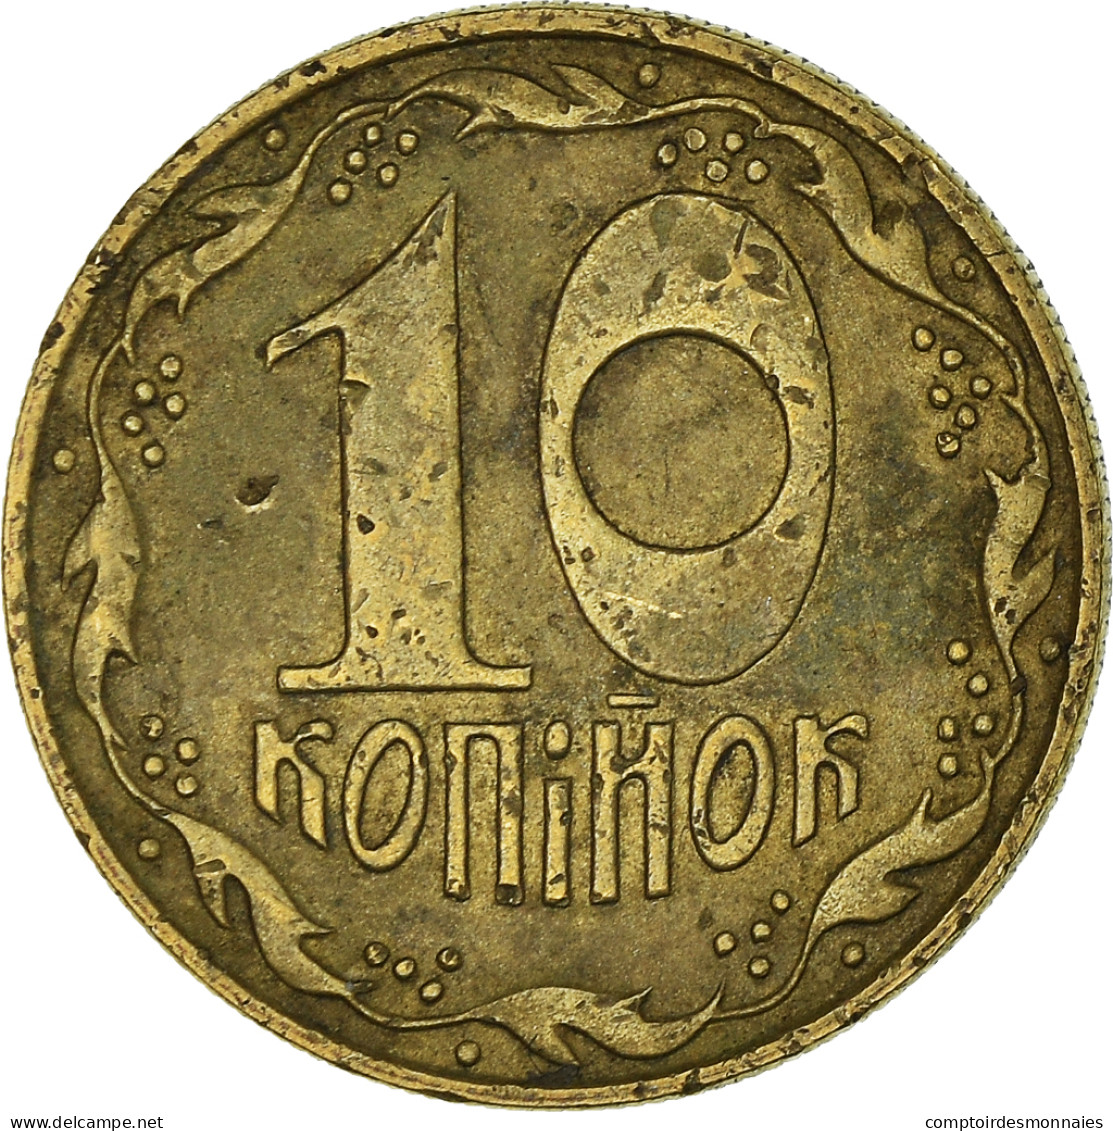 Monnaie, Ukraine, 10 Kopiyok, 1992 - Oekraïne